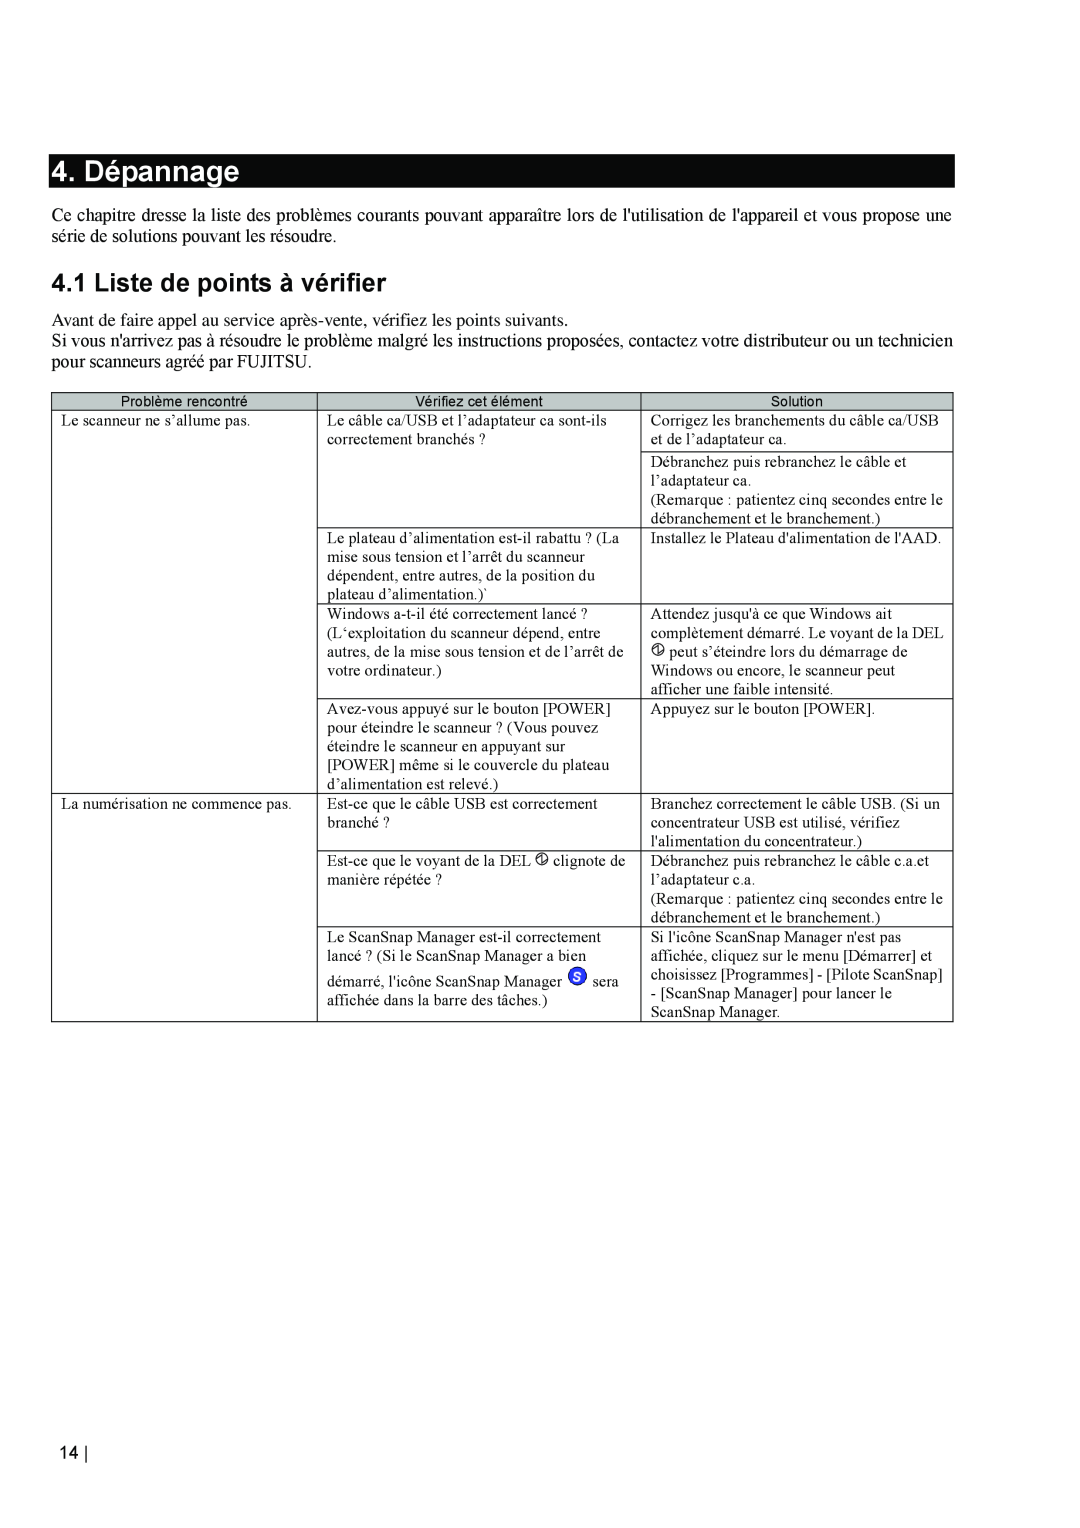 Fujitsu fi-5110EOX2 manual 4. Dépannage, Liste de points à vérifier 